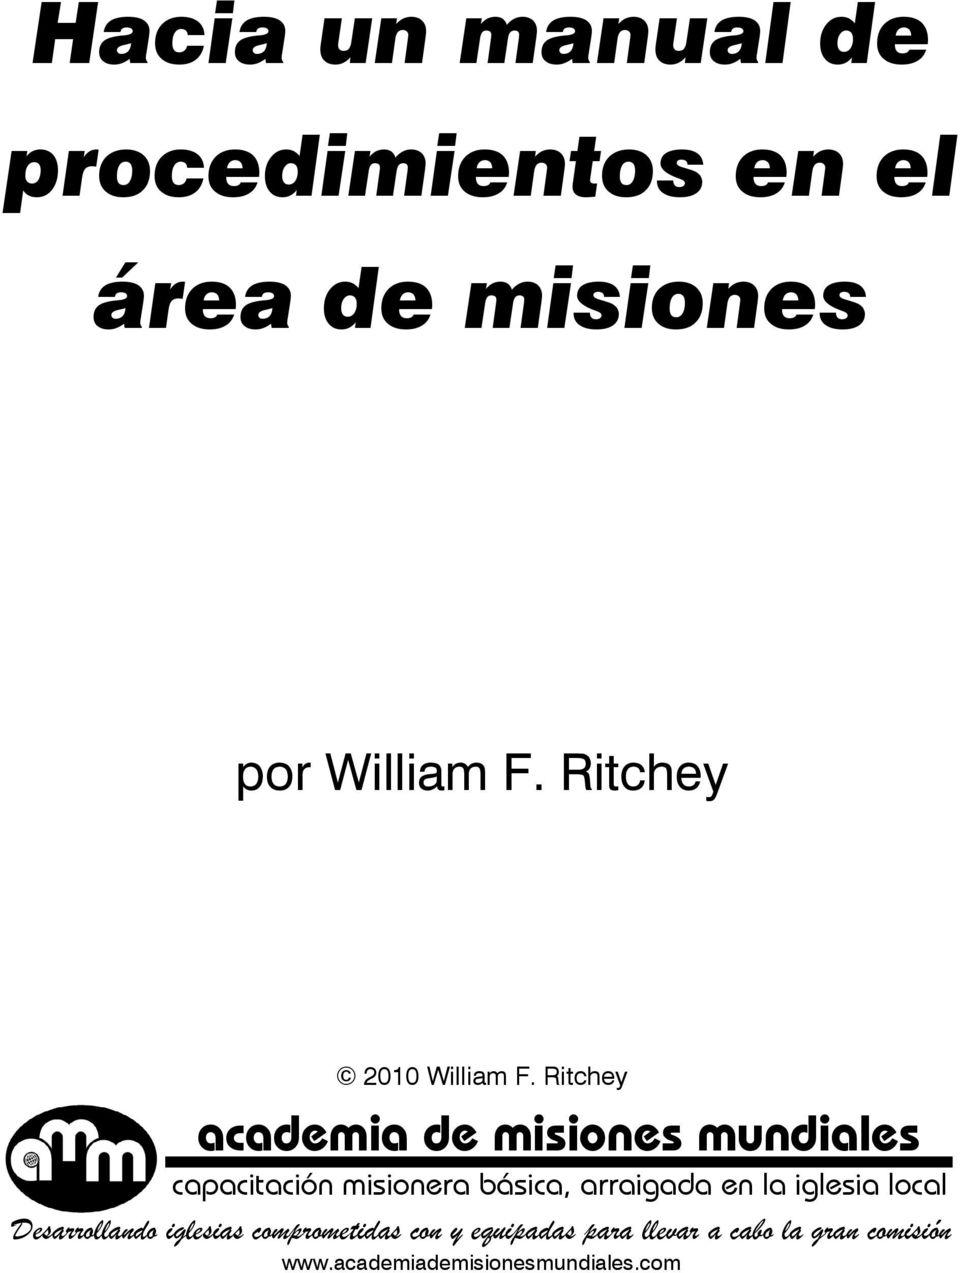 Ritchey academia de misiones mundiales capacitación misionera básica, arraigada